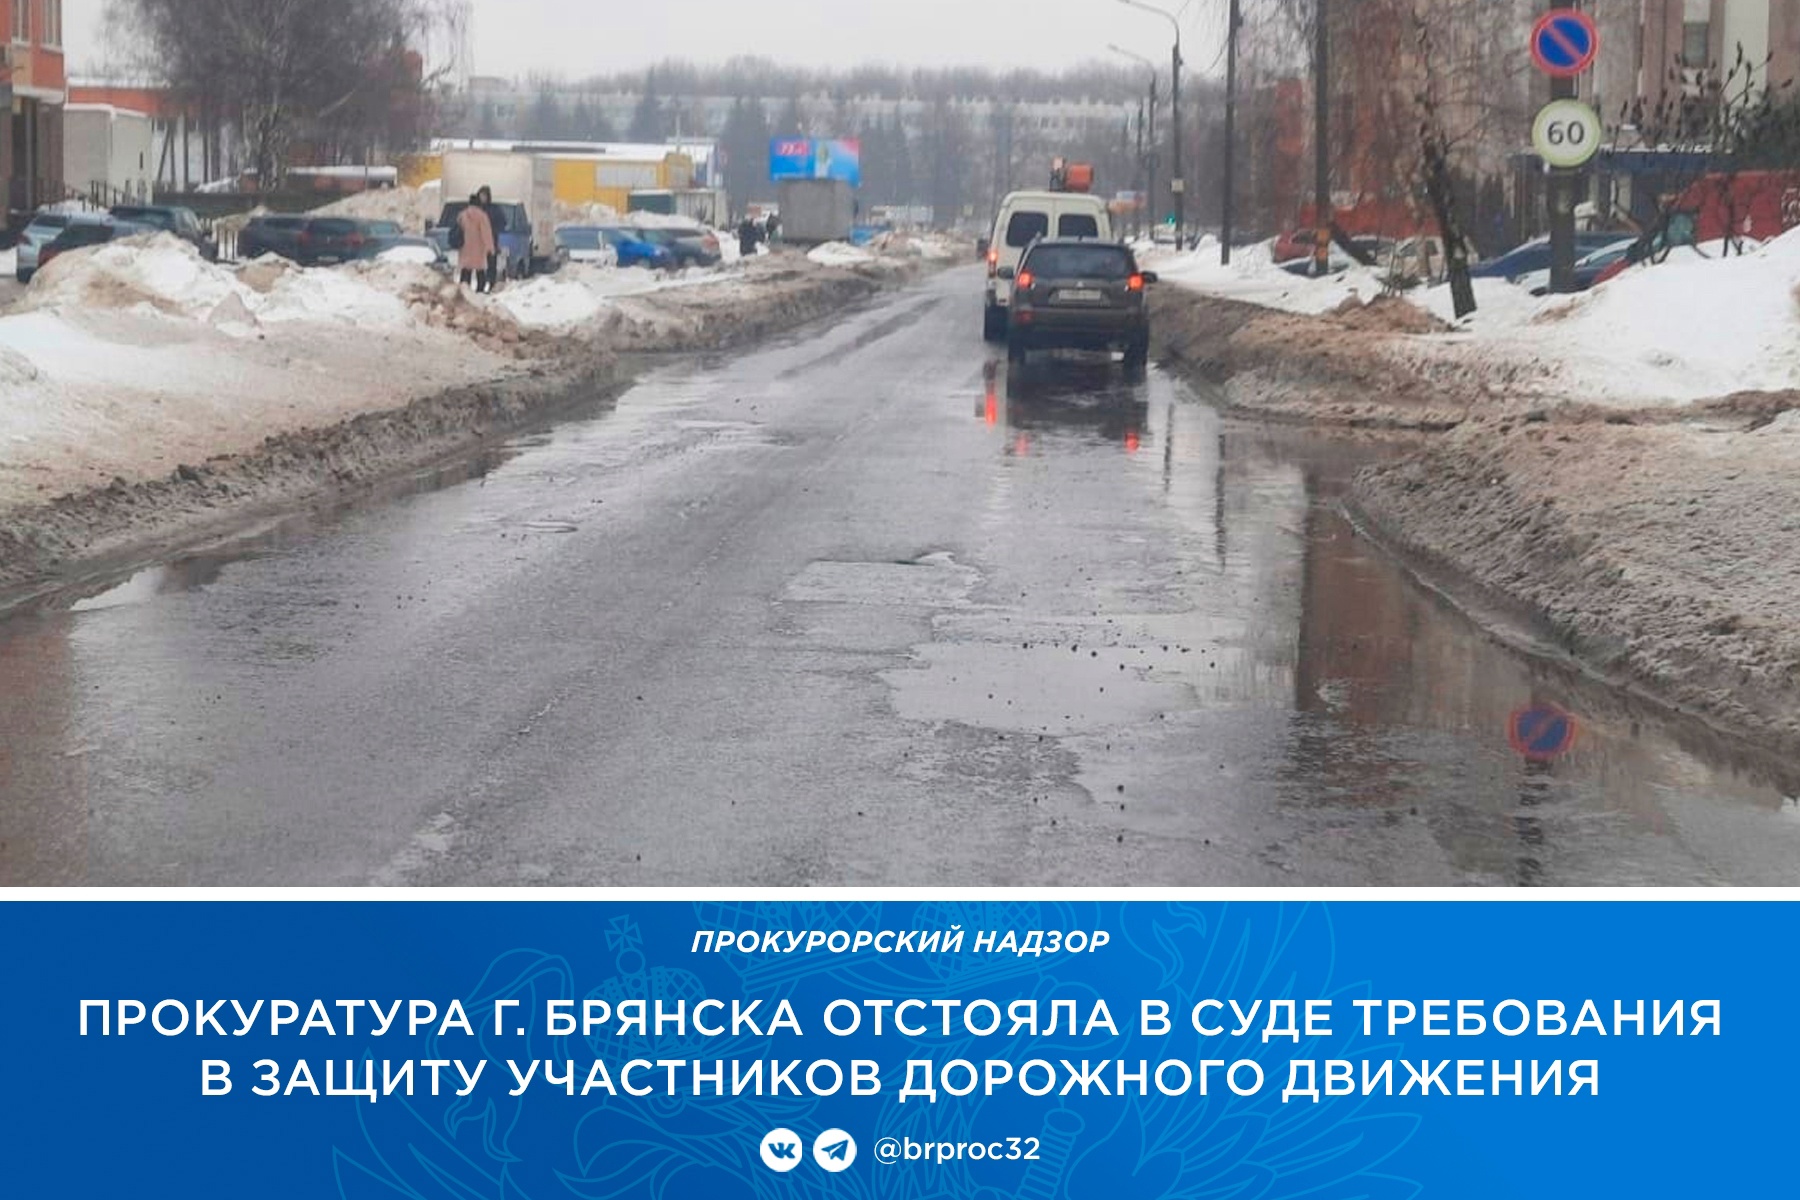 Прокуратура потребовала отремонтировать улицу Горбатова в Брянске